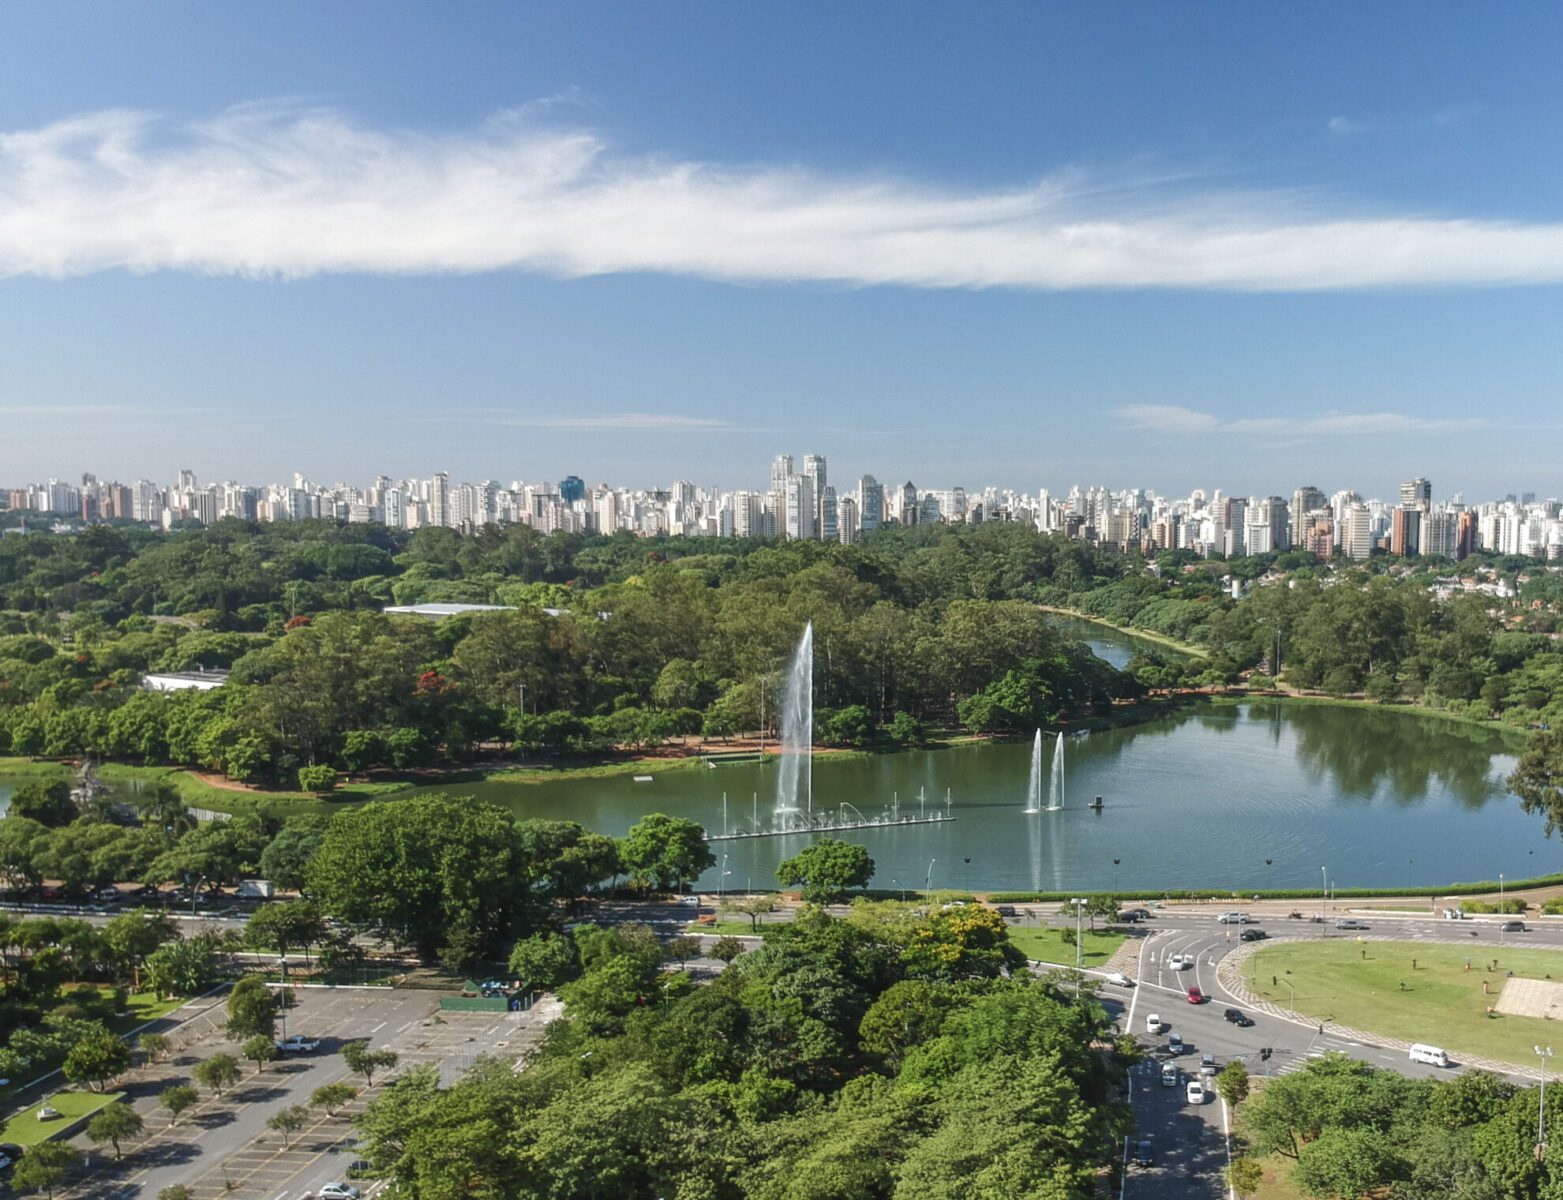 Parques urbanos do Brasil: o que aproxima e o que afasta as pessoas destes locais